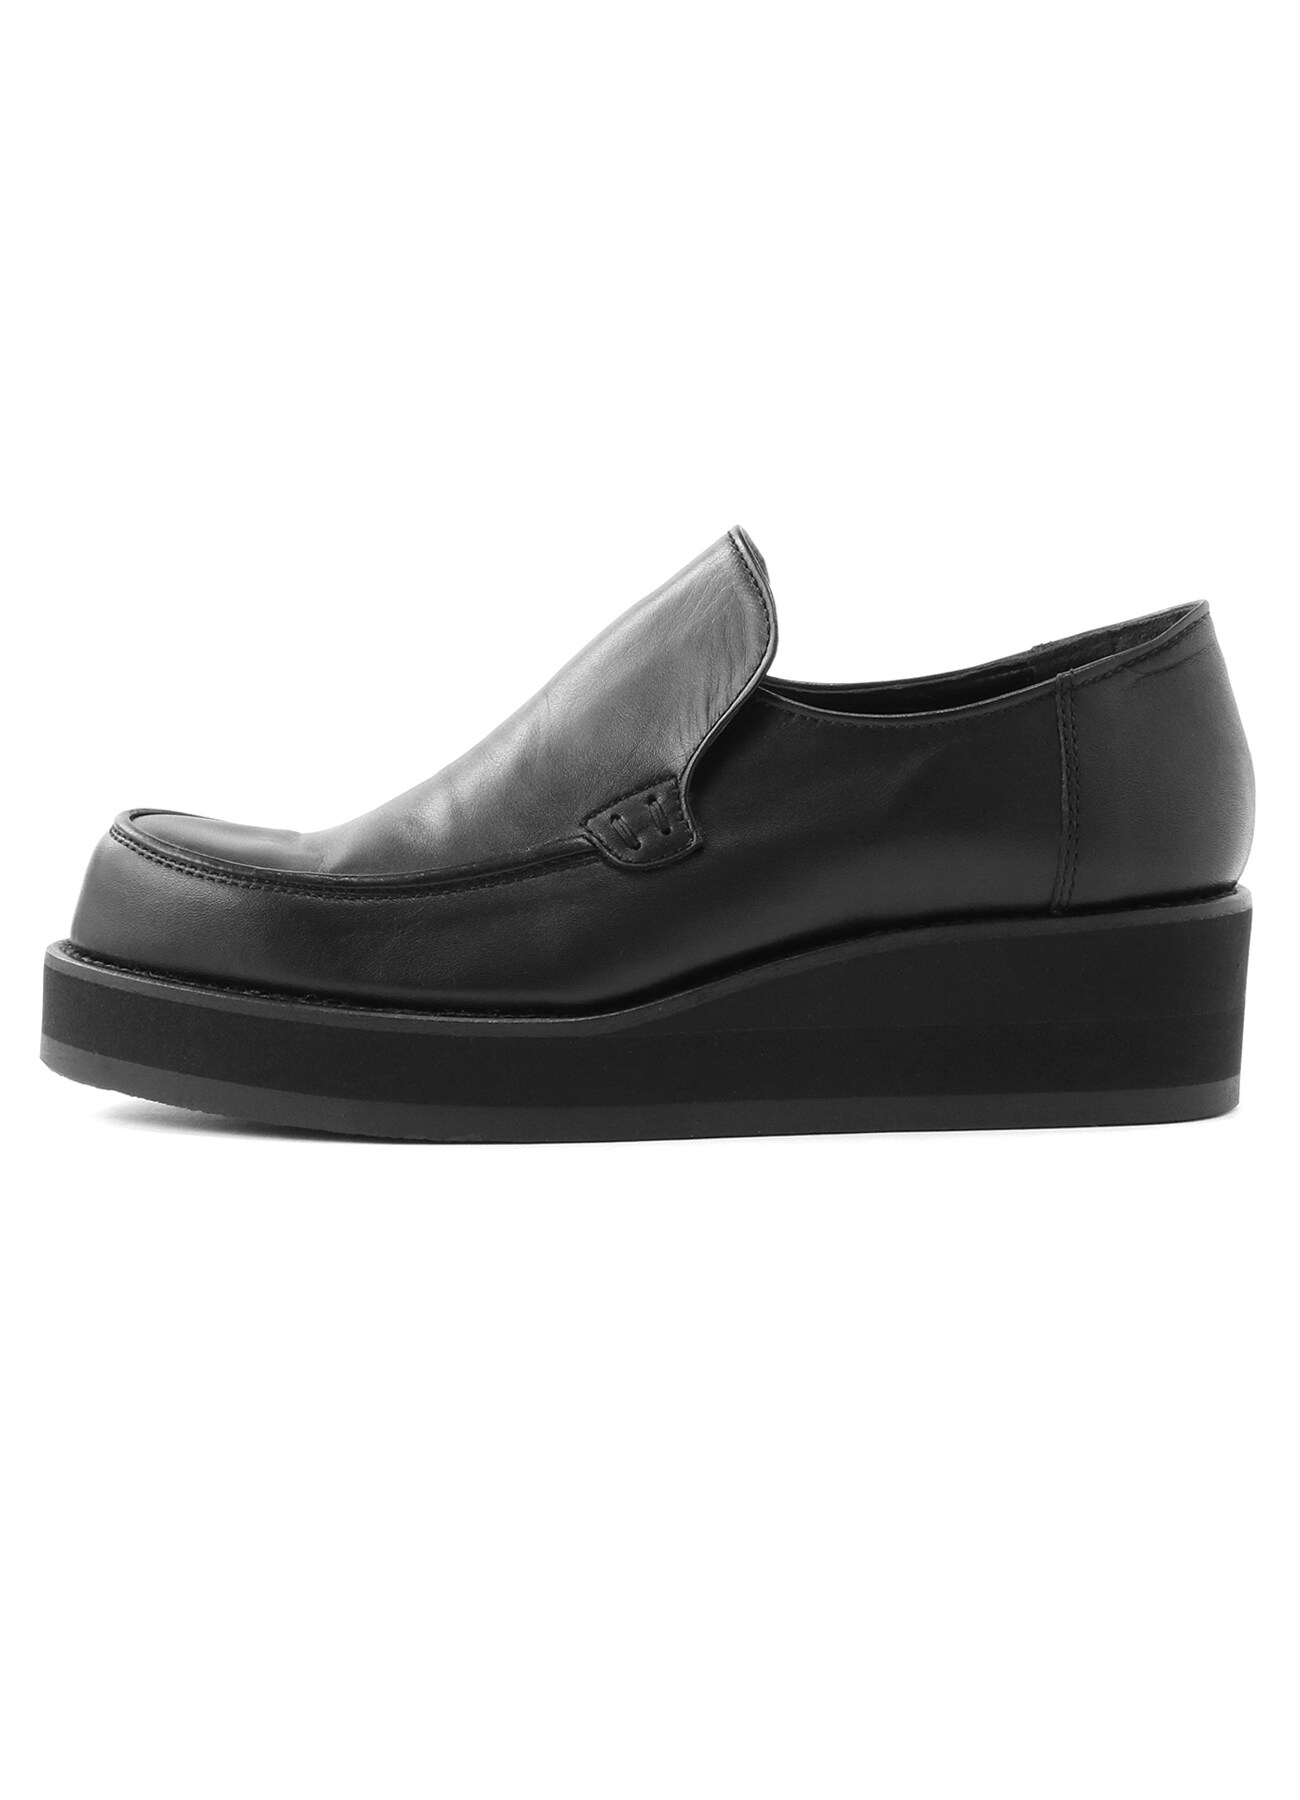 Smooth leather platform slip-on (US 5.5 Black): Y's ｜ THE SHOP